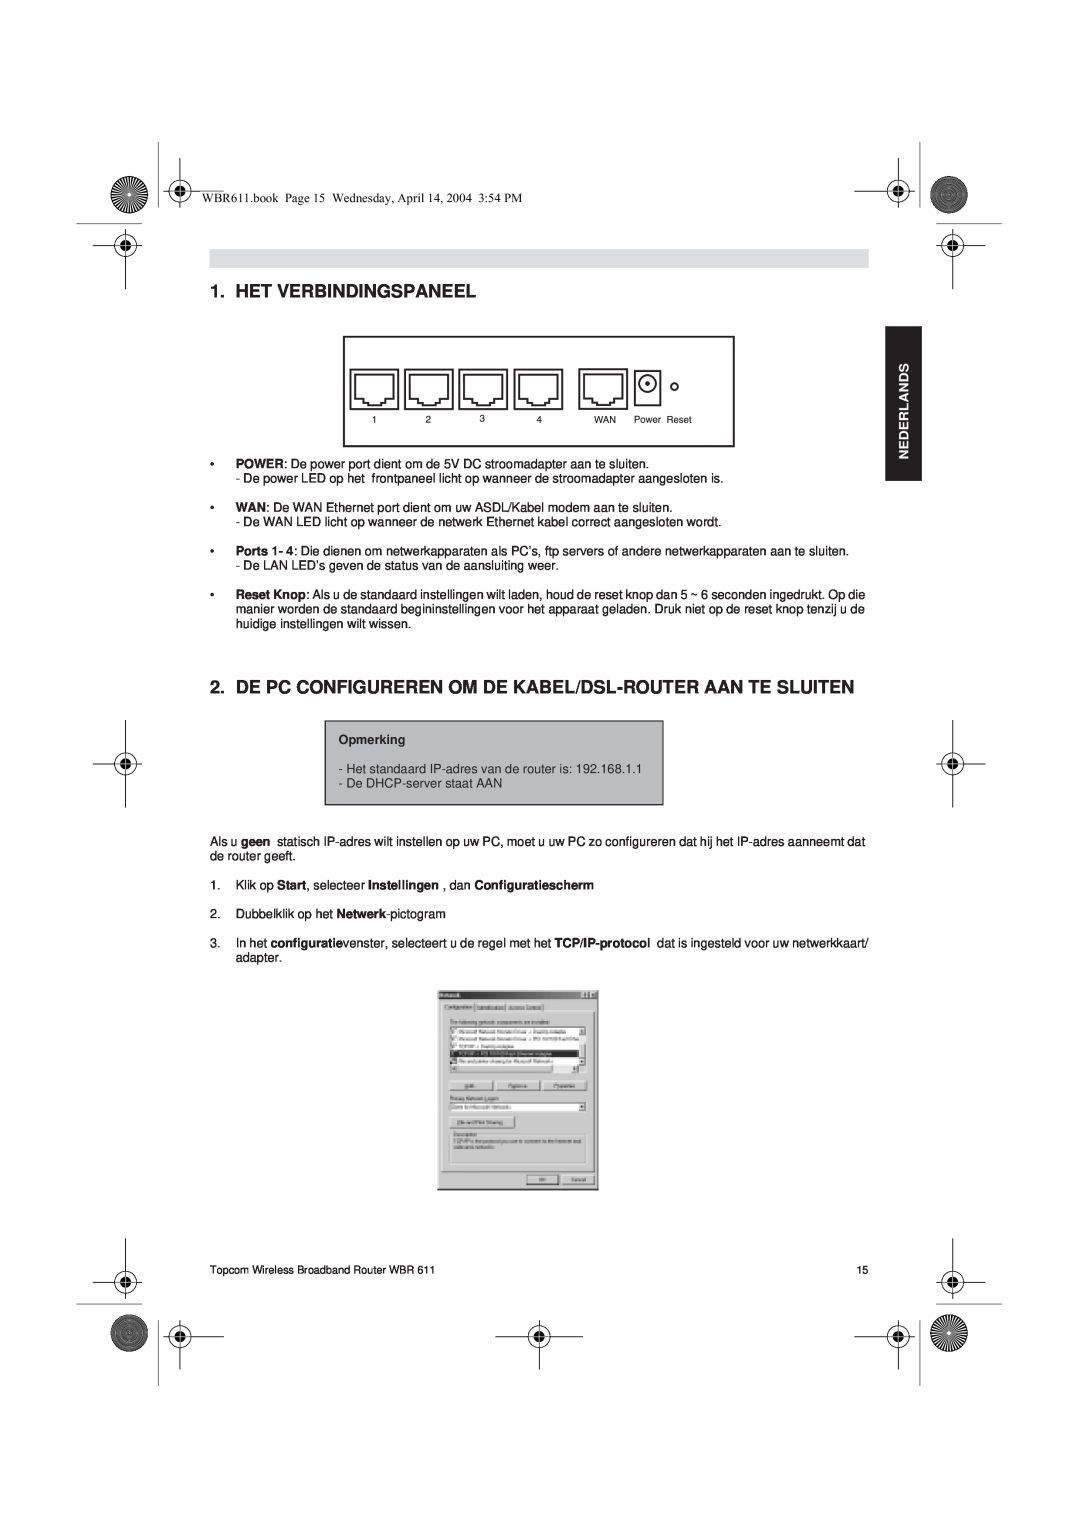 Topcom WBR 611 Het Verbindingspaneel, De Pc Configureren Om De Kabel/Dsl-Router Aan Te Sluiten, Nederlands, Opmerking 